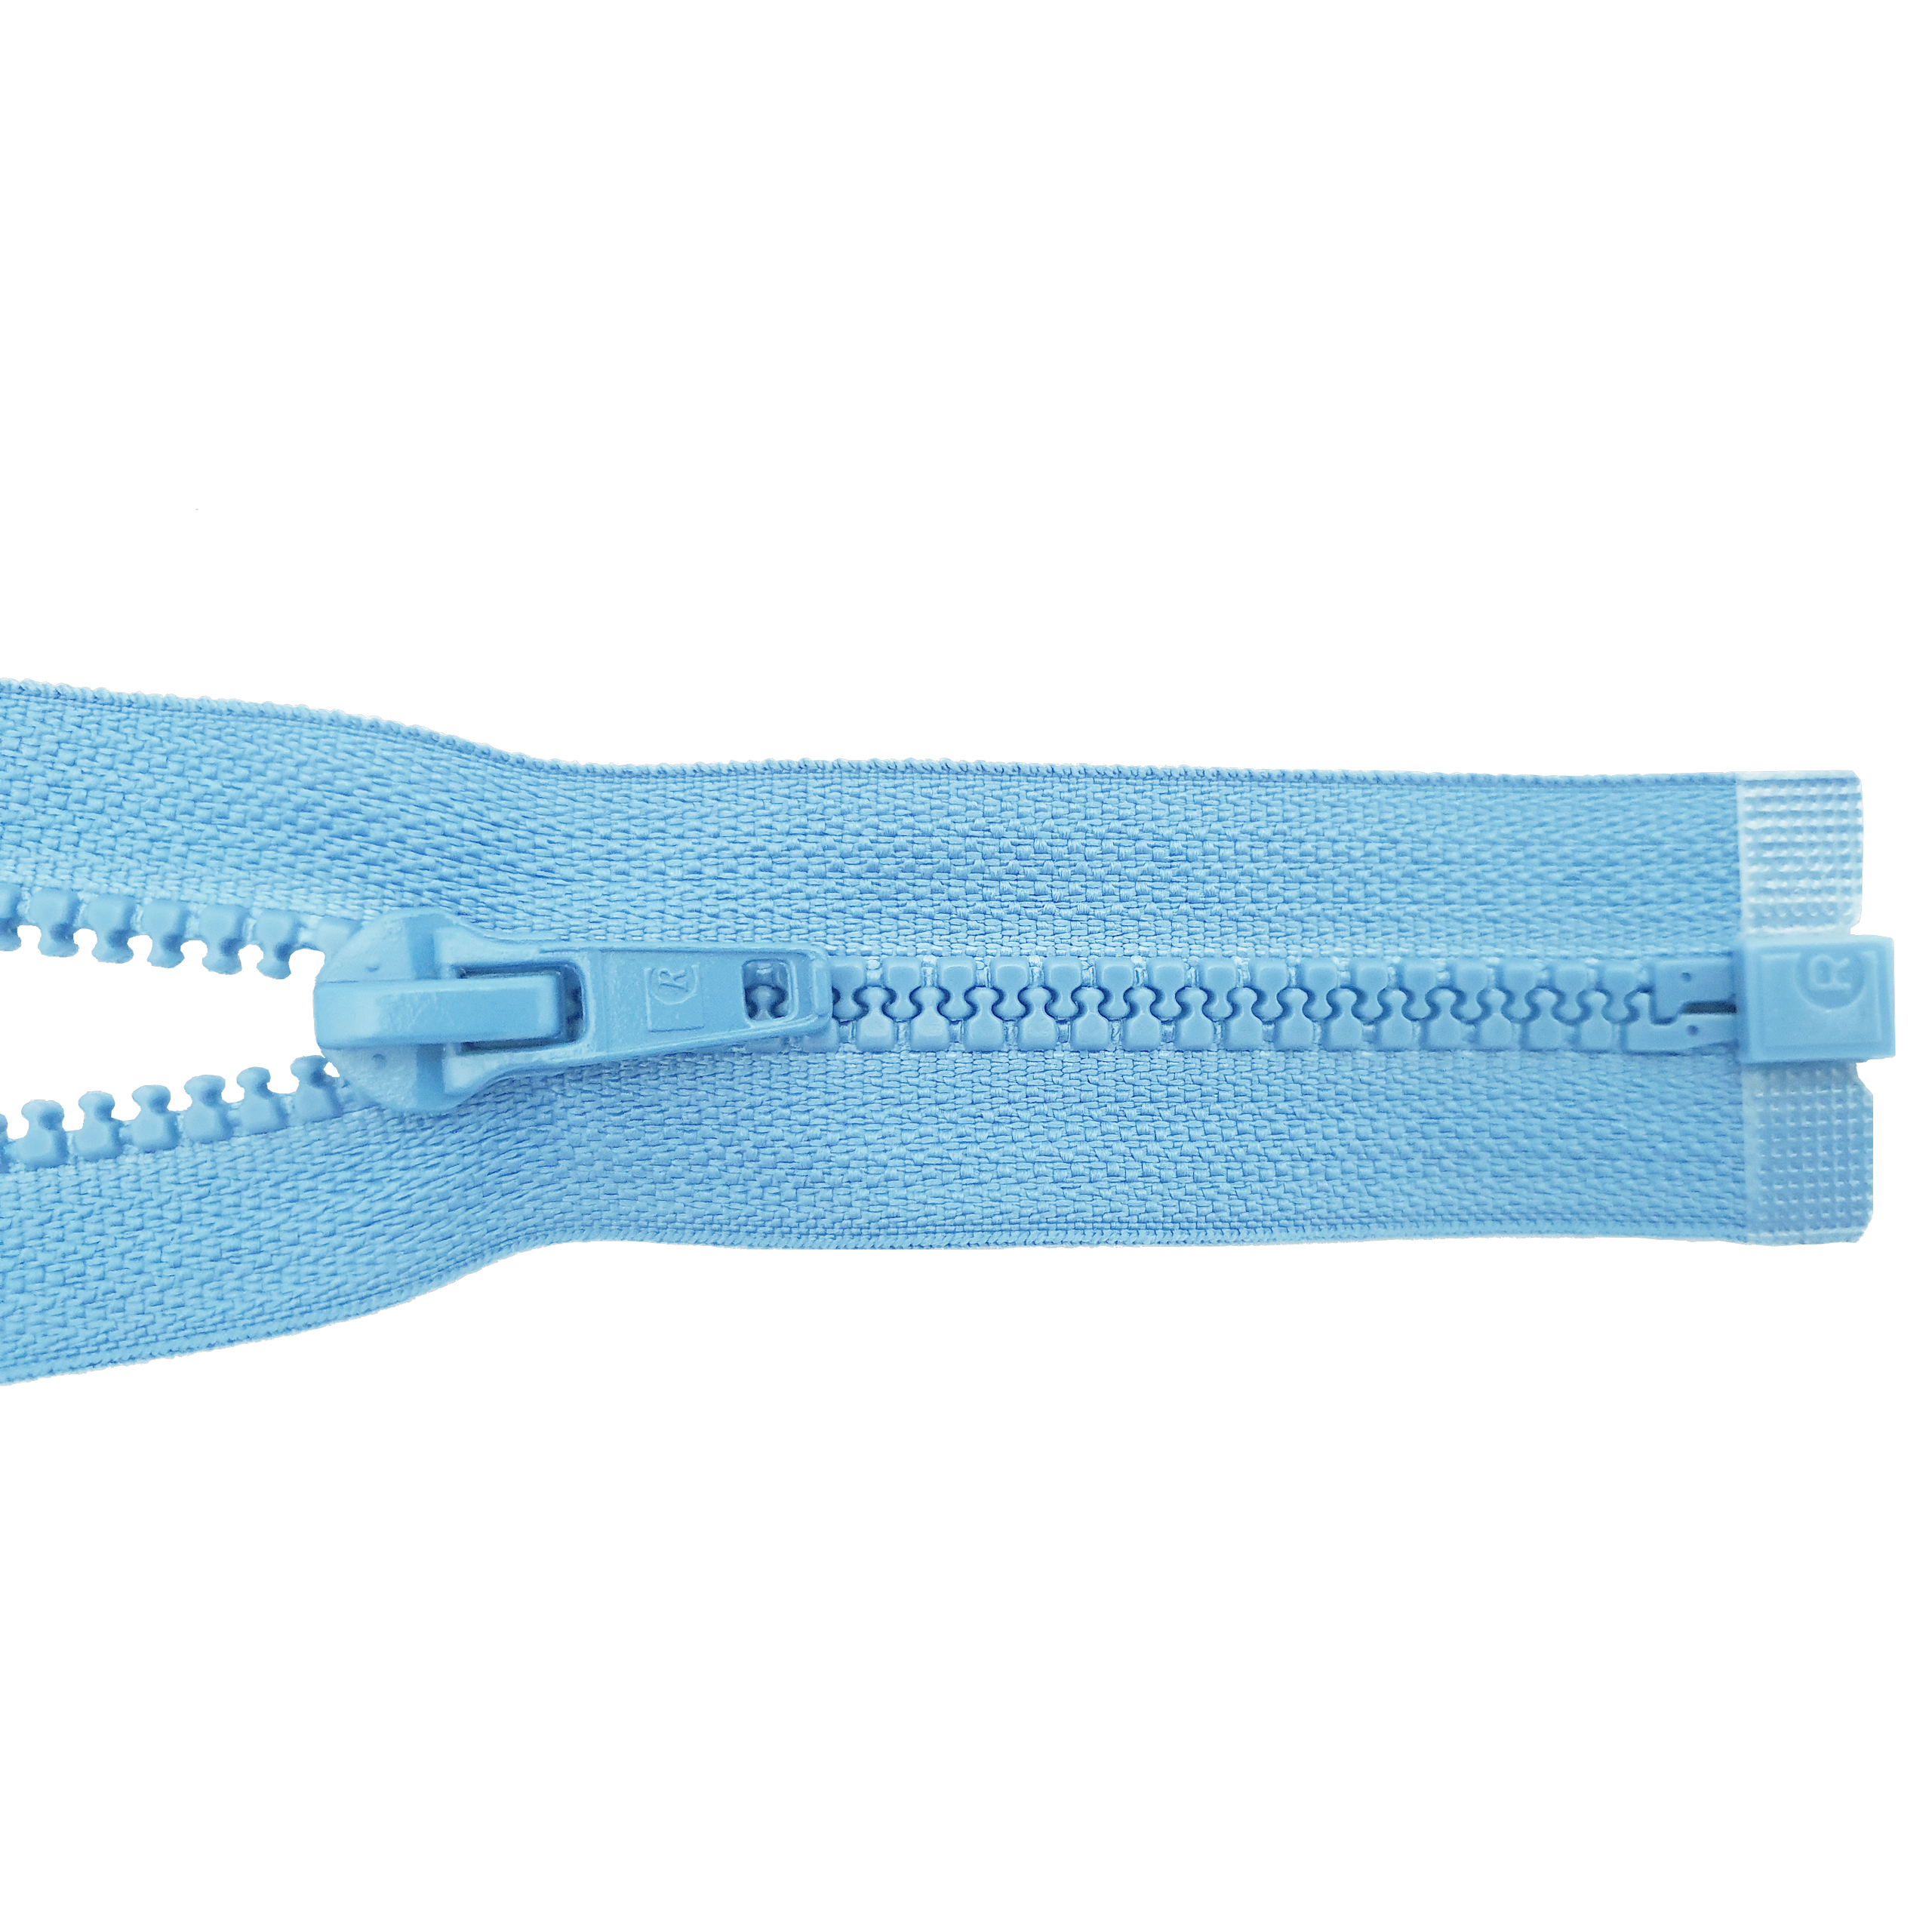 Reißverschluss 80cm, teilbar, Kstoff Zähne breit, turmalin/h.türkisblau, hochwertiger Marken-Reißverschluss von Rubi/Barcelona